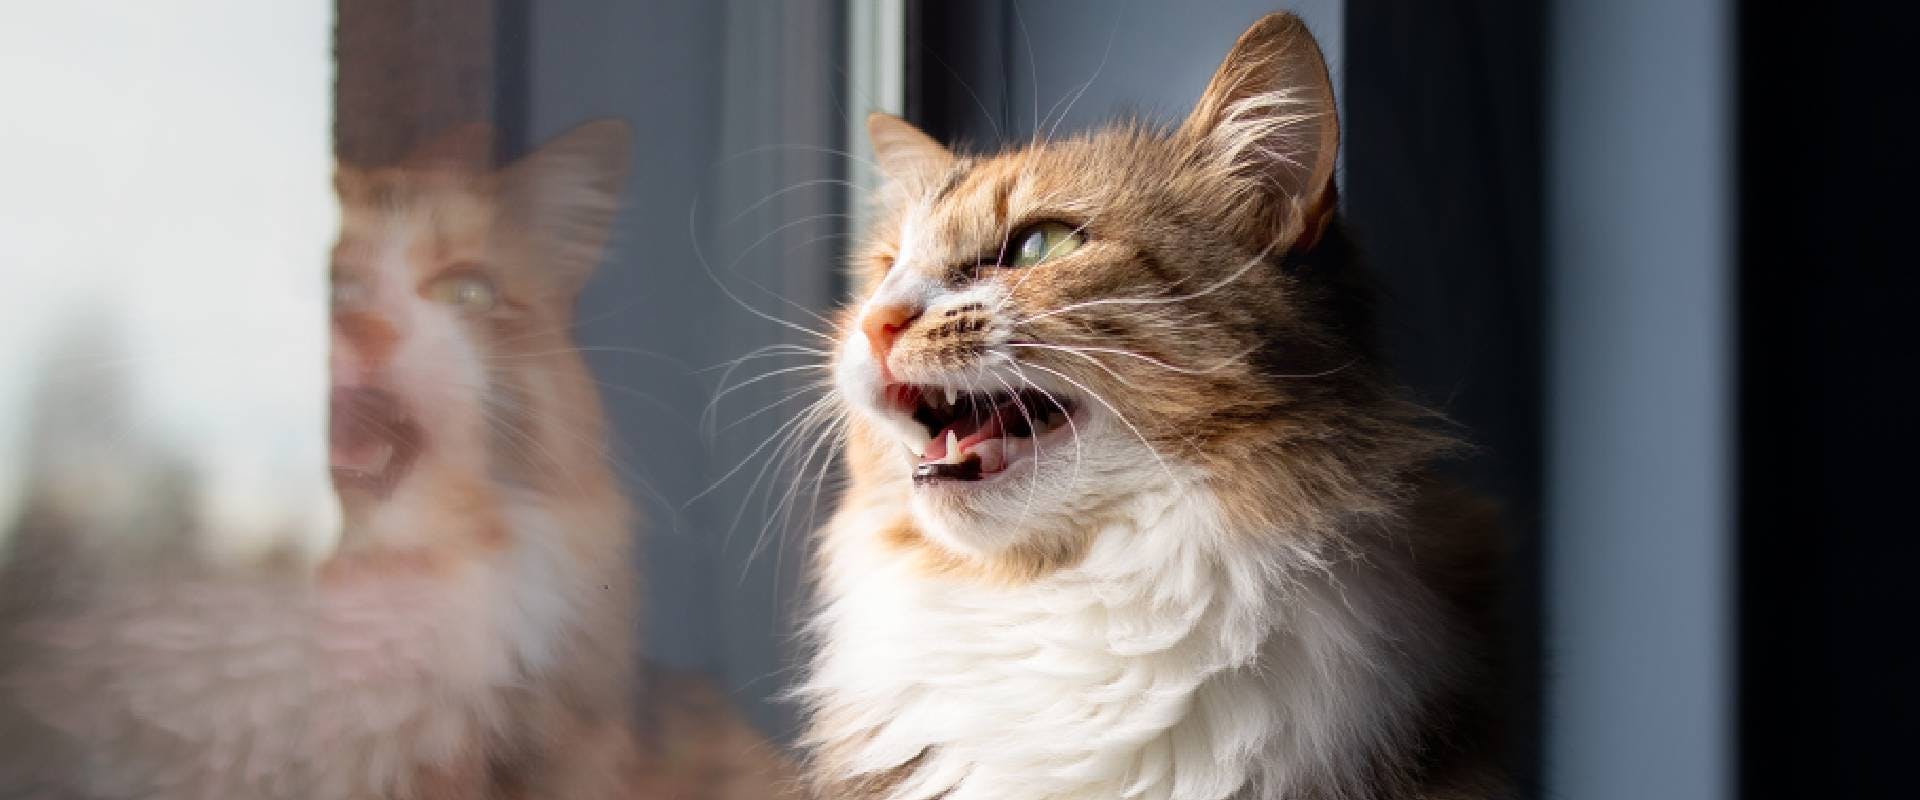 Cat sneering - a weird cat behavior